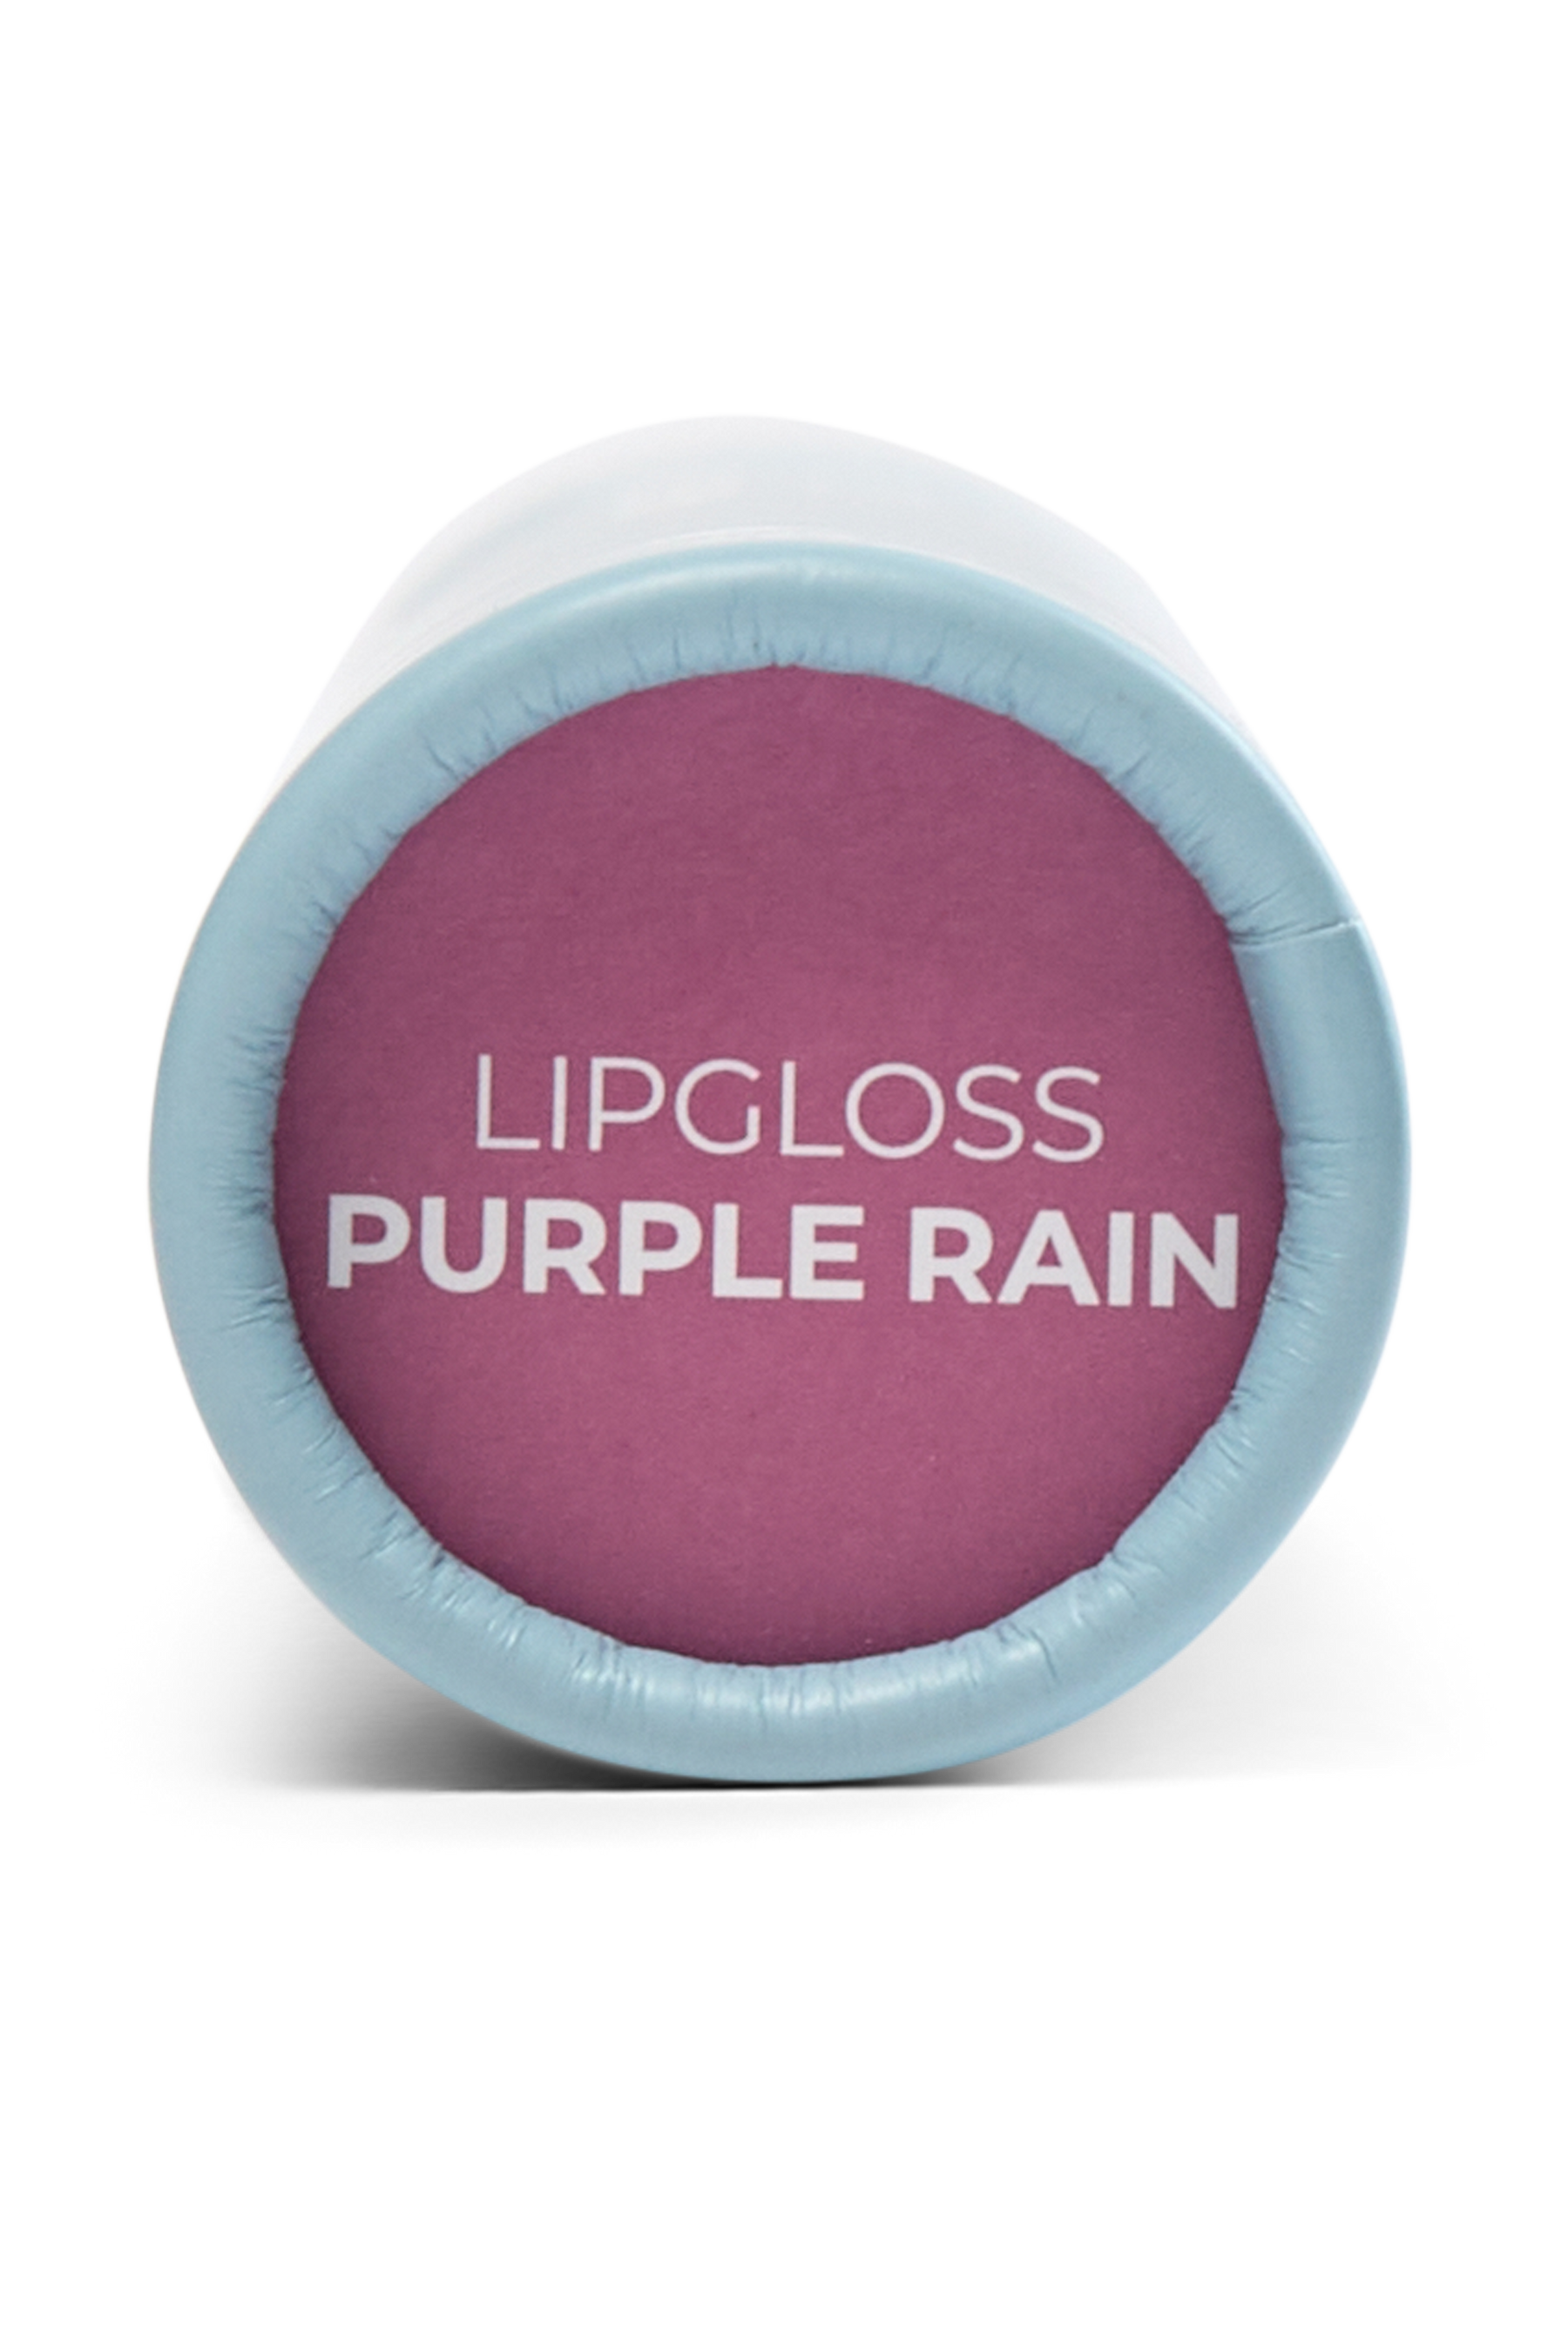 Reflection lipgloss - Purple Rain